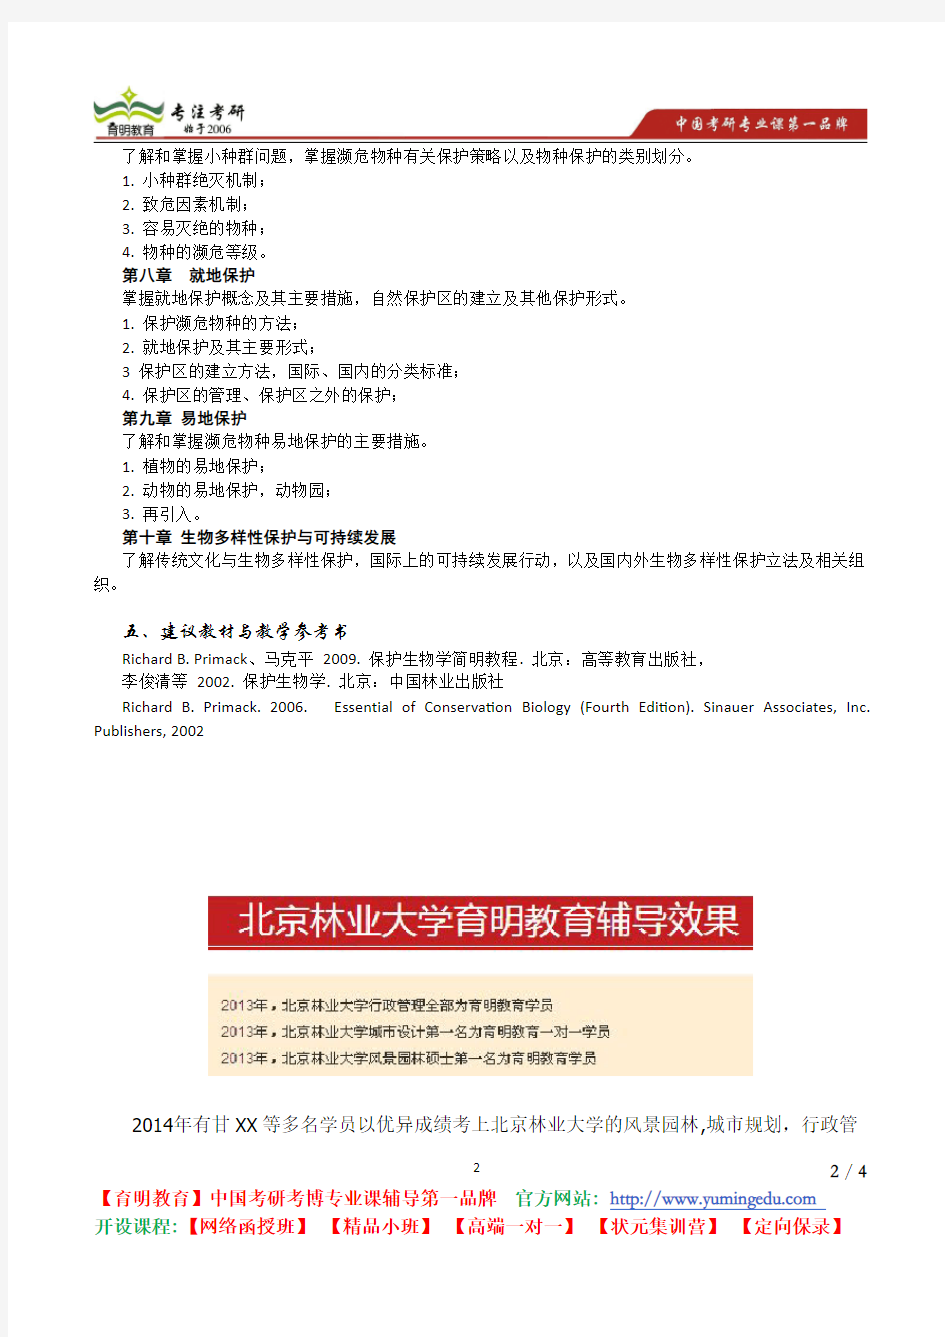 北京林业大学 2013年《保护生物学》考试大纲  复习参考书 考研辅导